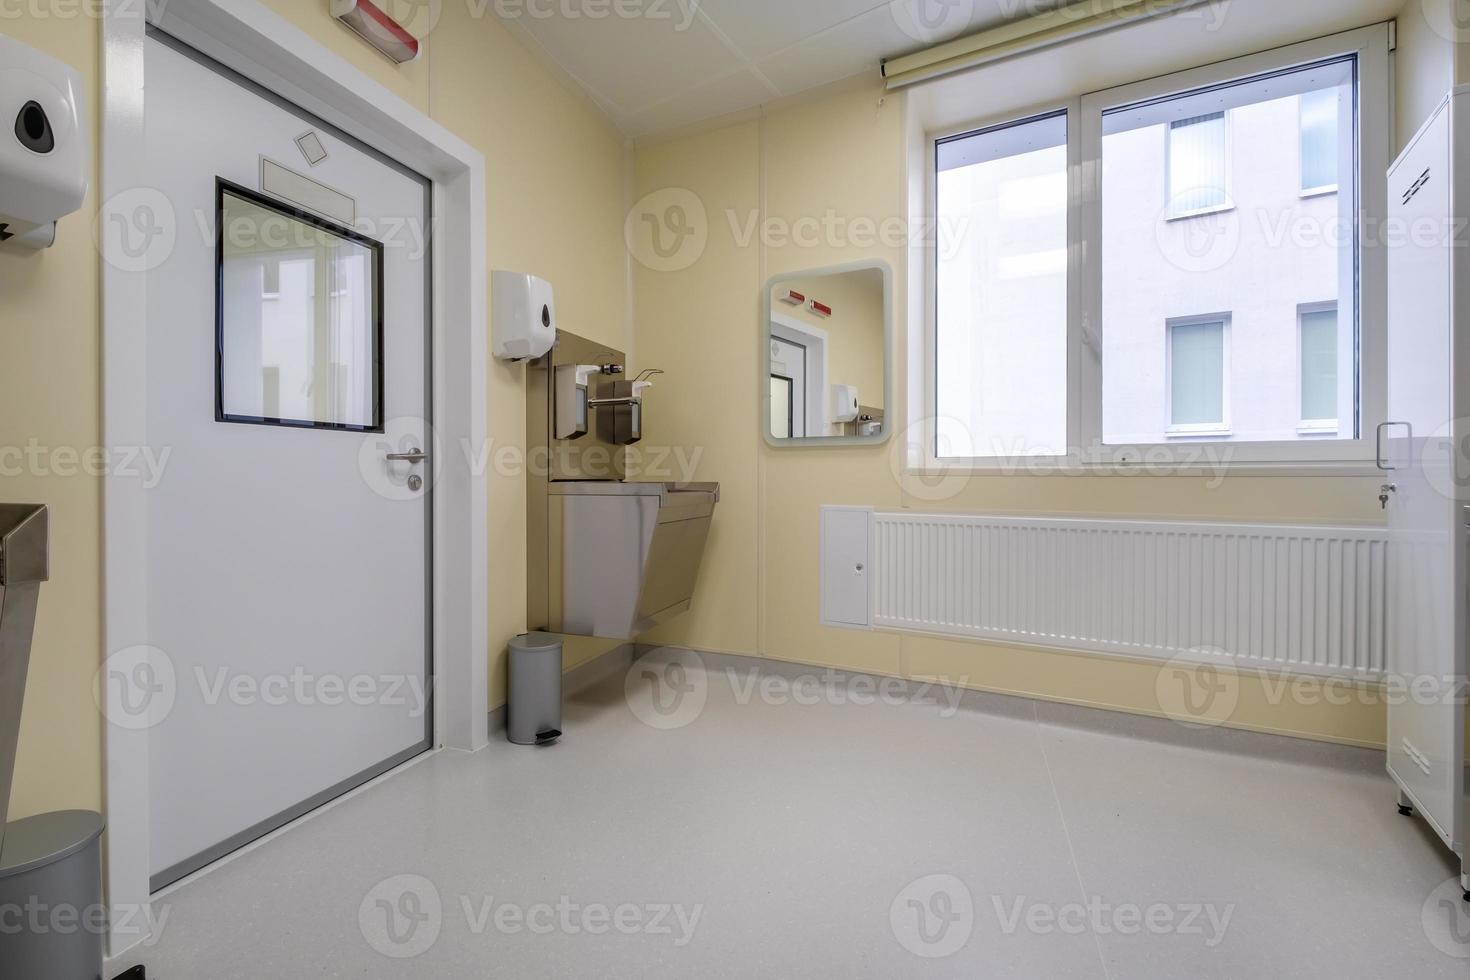 sala de tratamento em uma clínica moderna ou laboratório médico com equipamentos foto